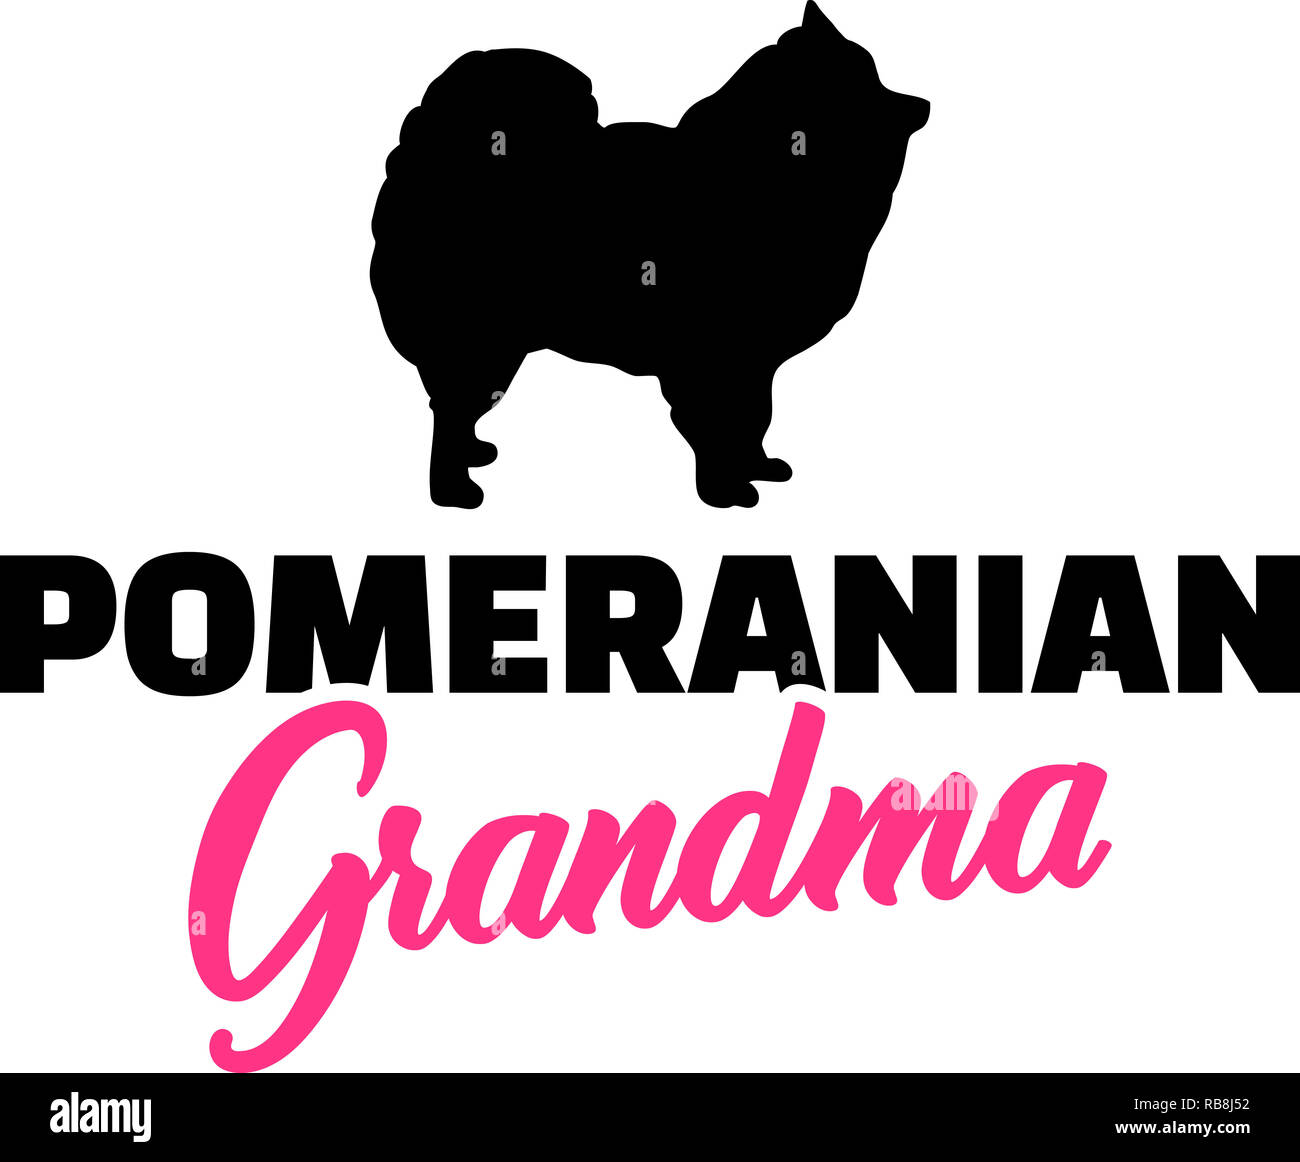 Pomeranian Grandma silhouette pink word Stock Photo